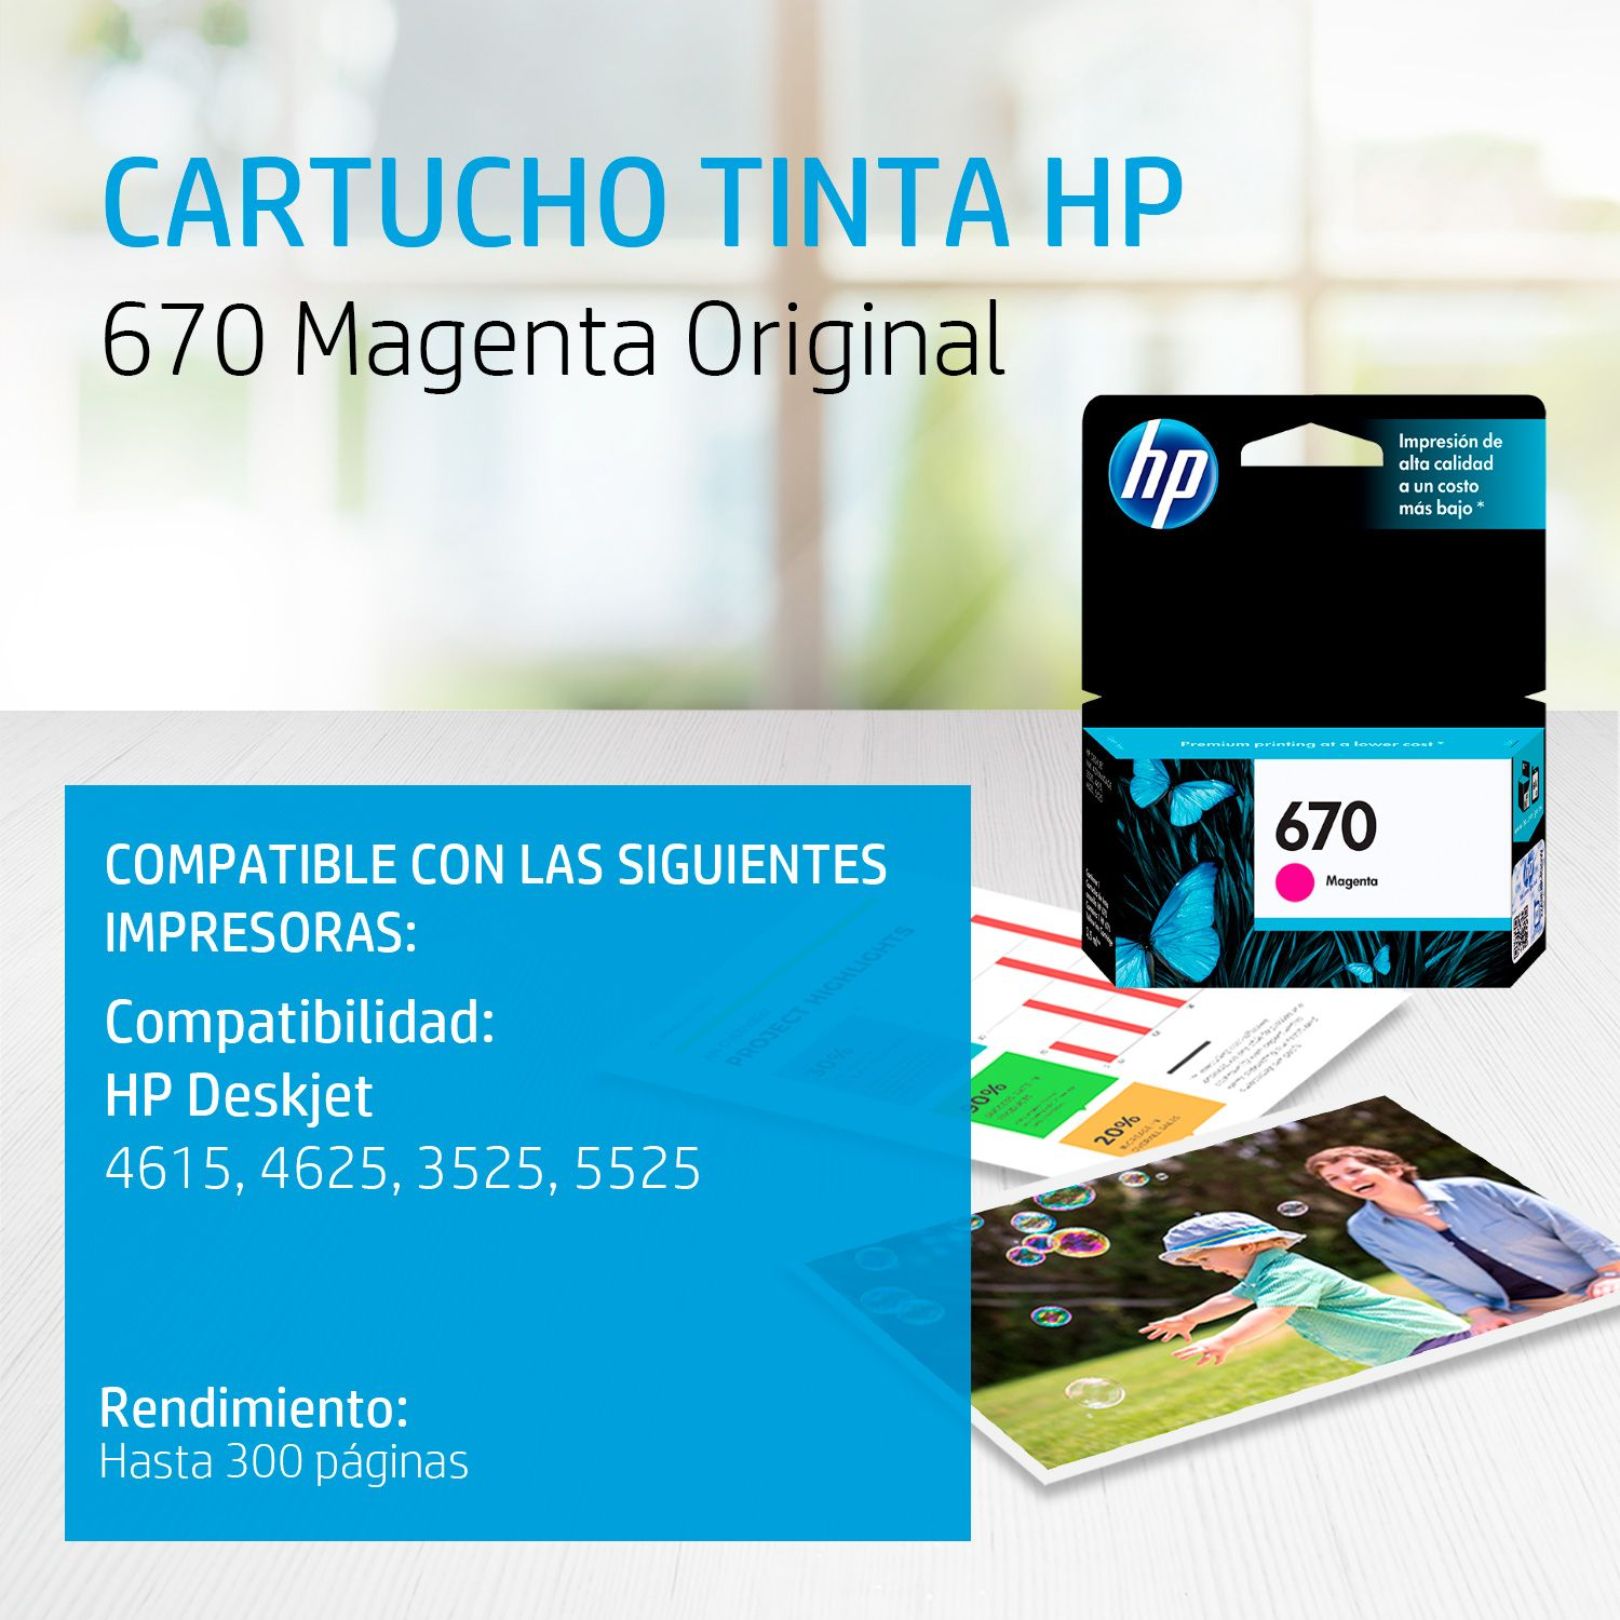 Cartucho de tinta HP 670 Magenta (CZ115AL) DeskJet 3525/4615/4625/5525 300 Pag.